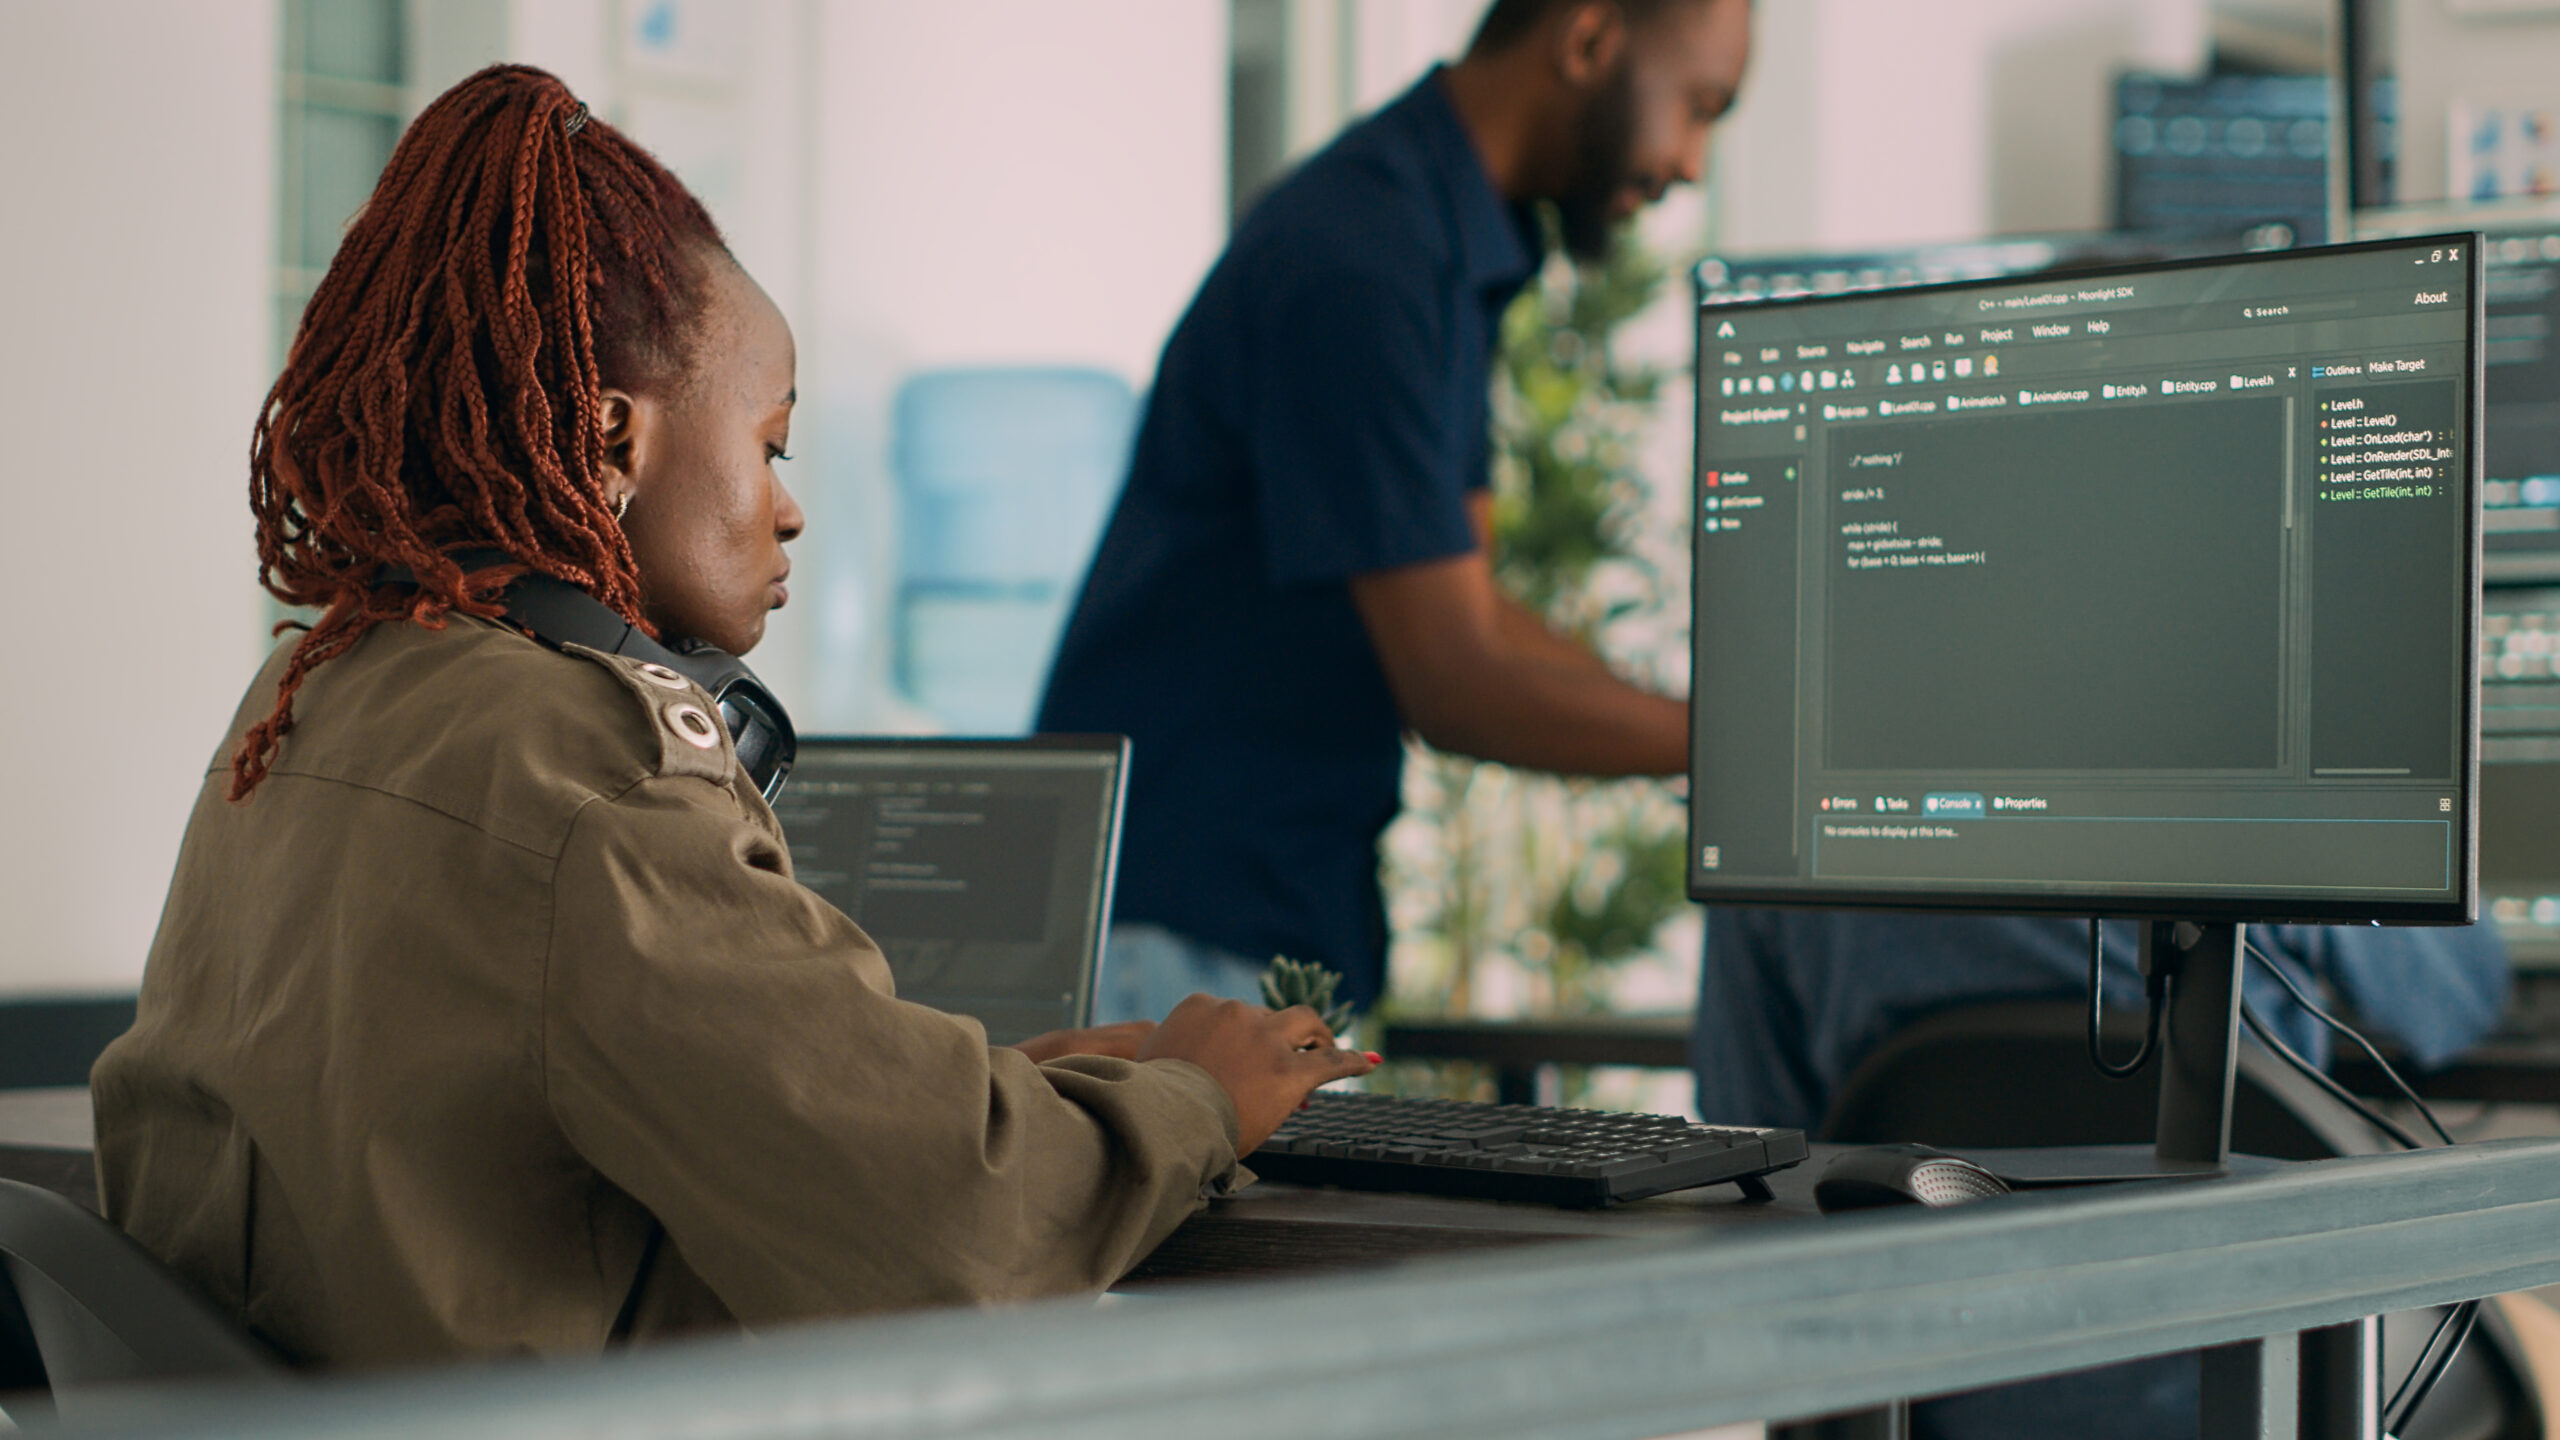 Imagem capa do conteúdo sobre Operações de segurança, onde há uma mulher negra de tranças vermelhas vestindo um casaco bege está sentada em frente ao computador, na tela aparecem códigos que ela está escrevendo no teclado.